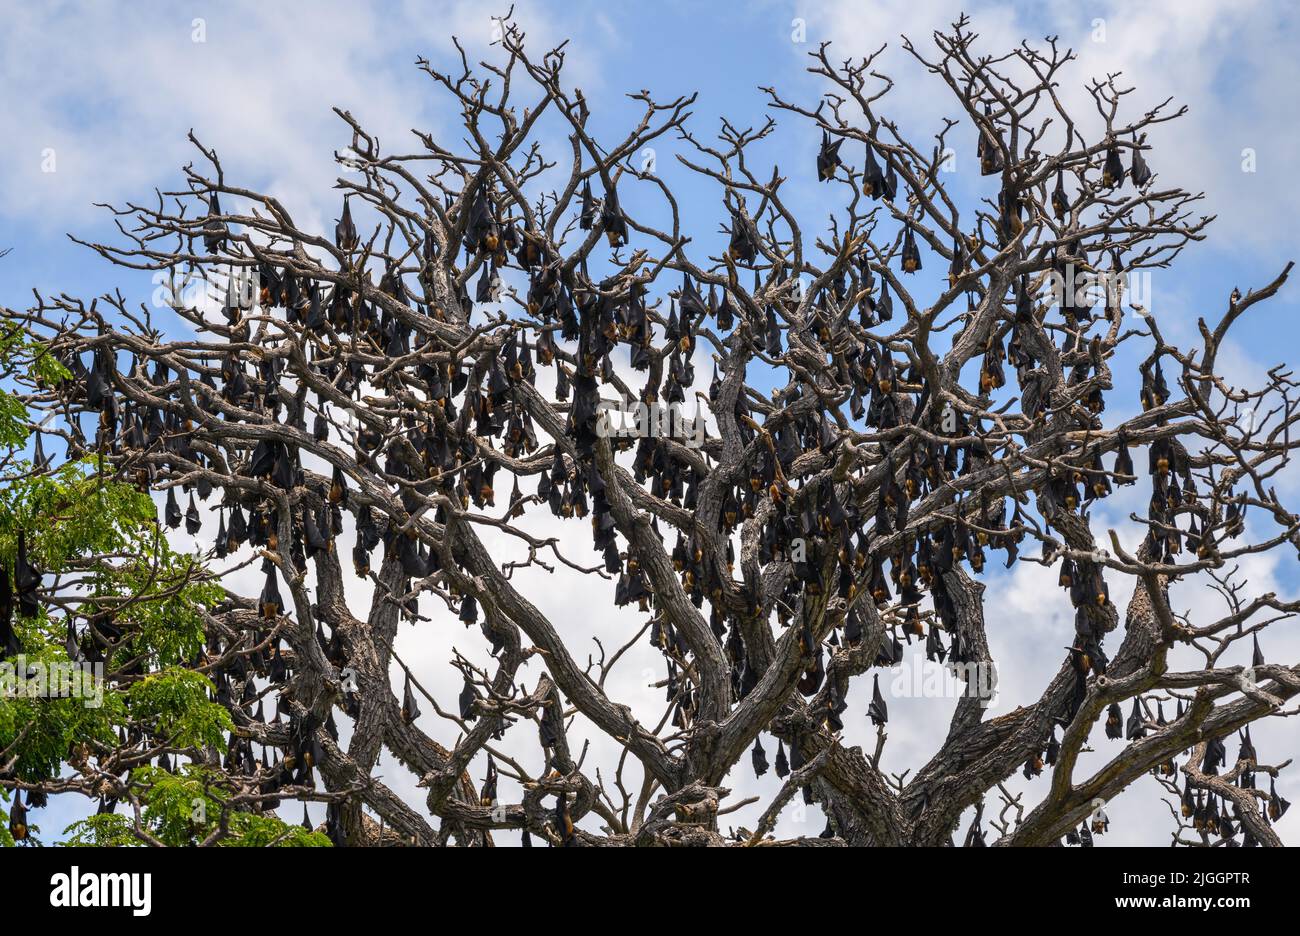 Eine große Kolonie von Fruchtfledermäusen, die tagsüber auf dem Kopf auf einem Baum roosting, ein Baum, der von der Kolonie riesiger Fledermäuse bedeckt ist. Stockfoto